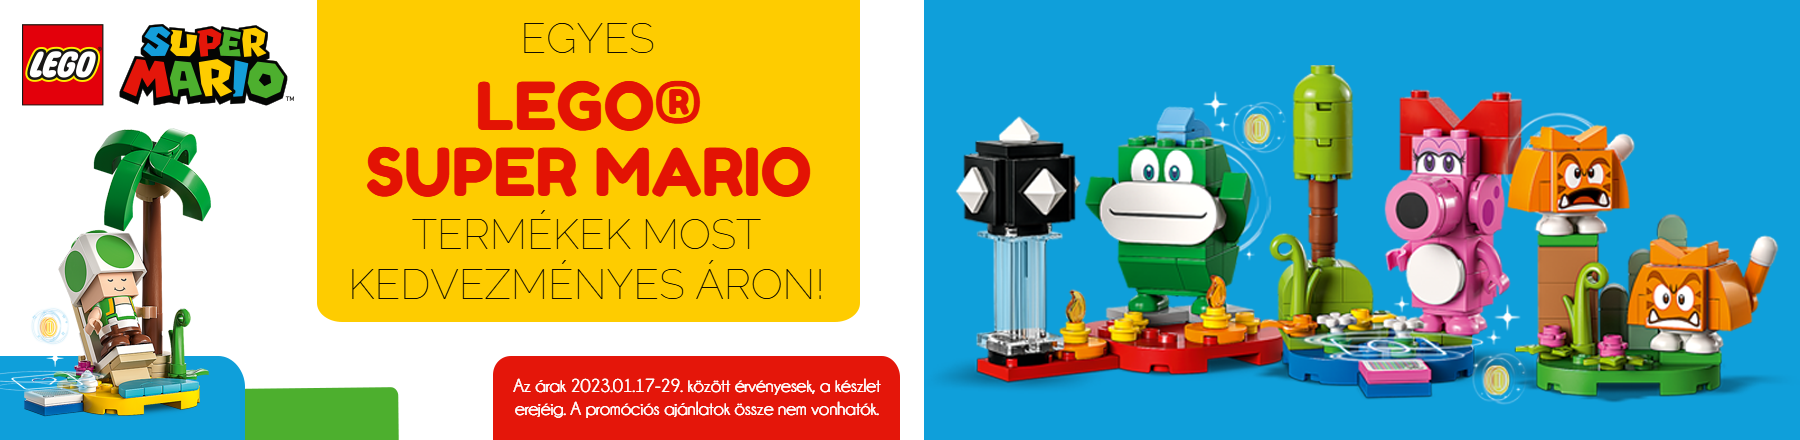 LEGO Super Mario szettek kedvezményes áron